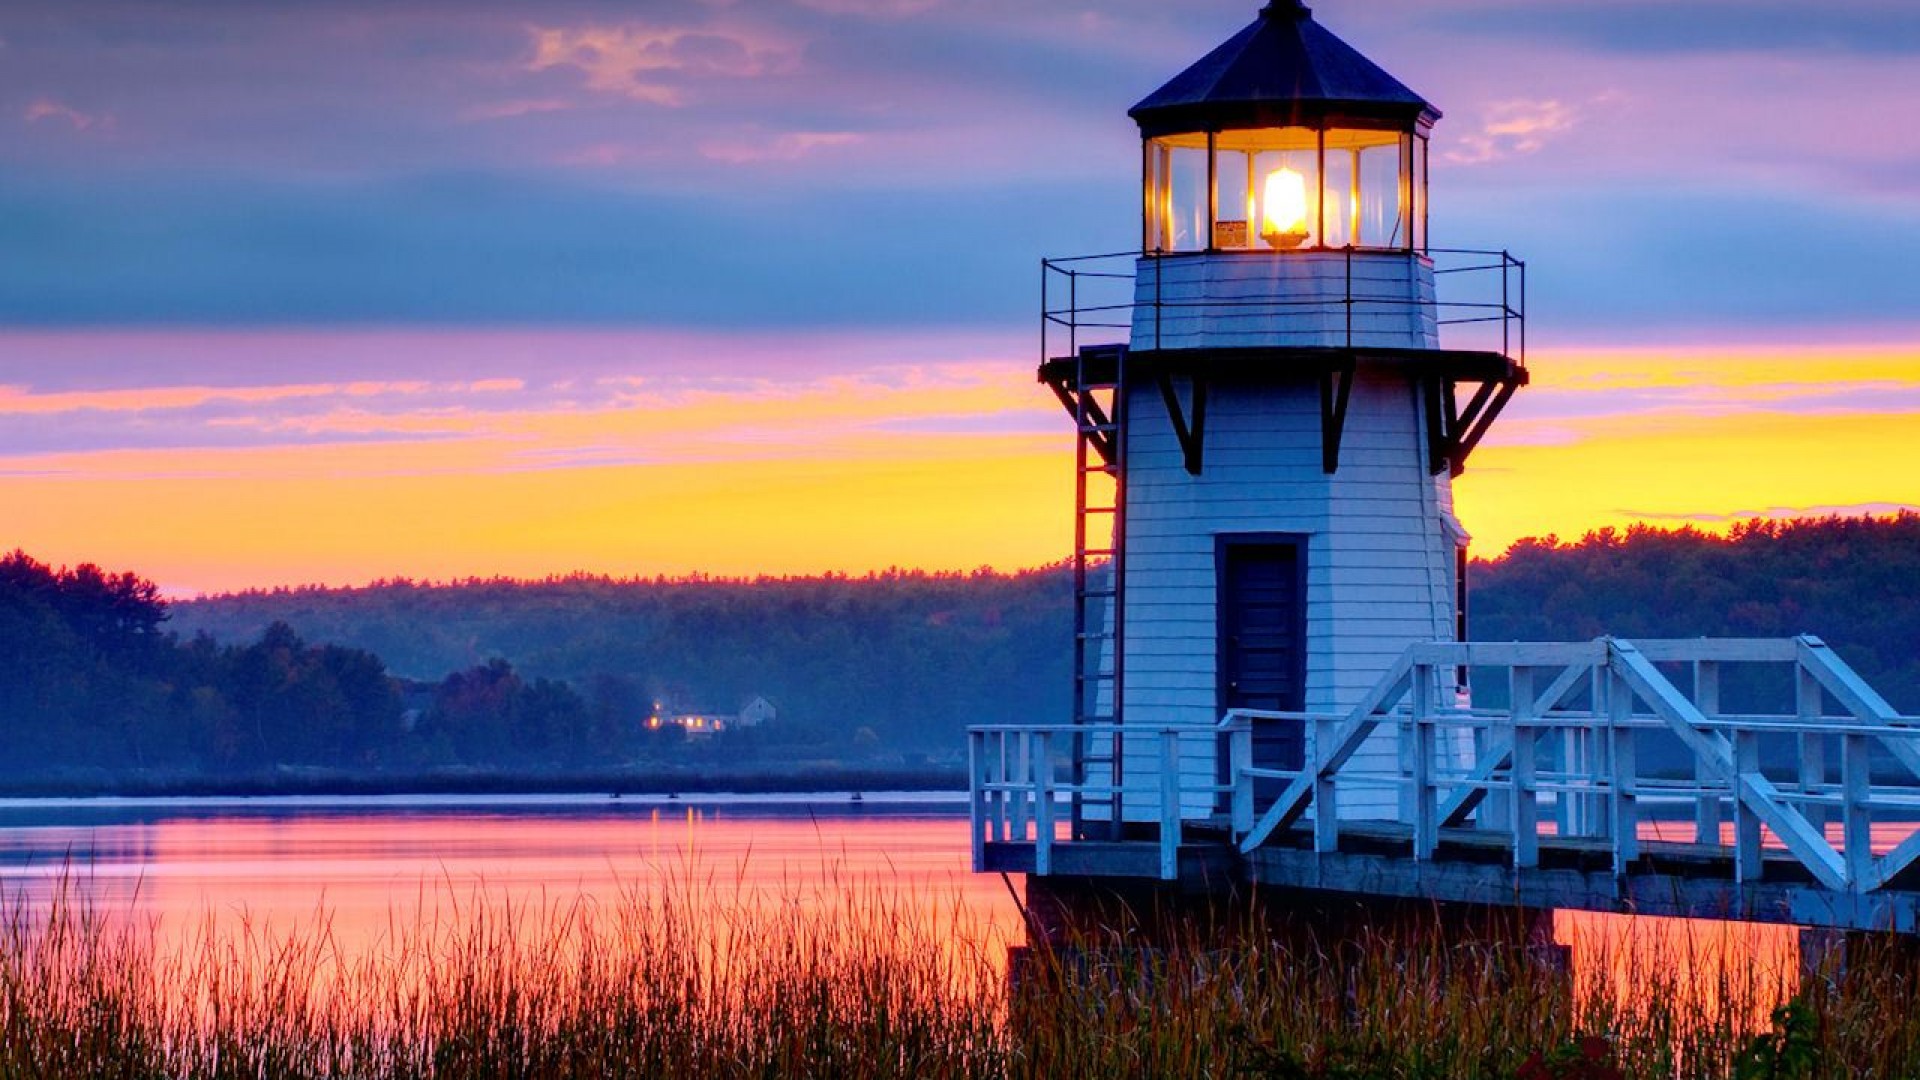 lighthouse sunset image